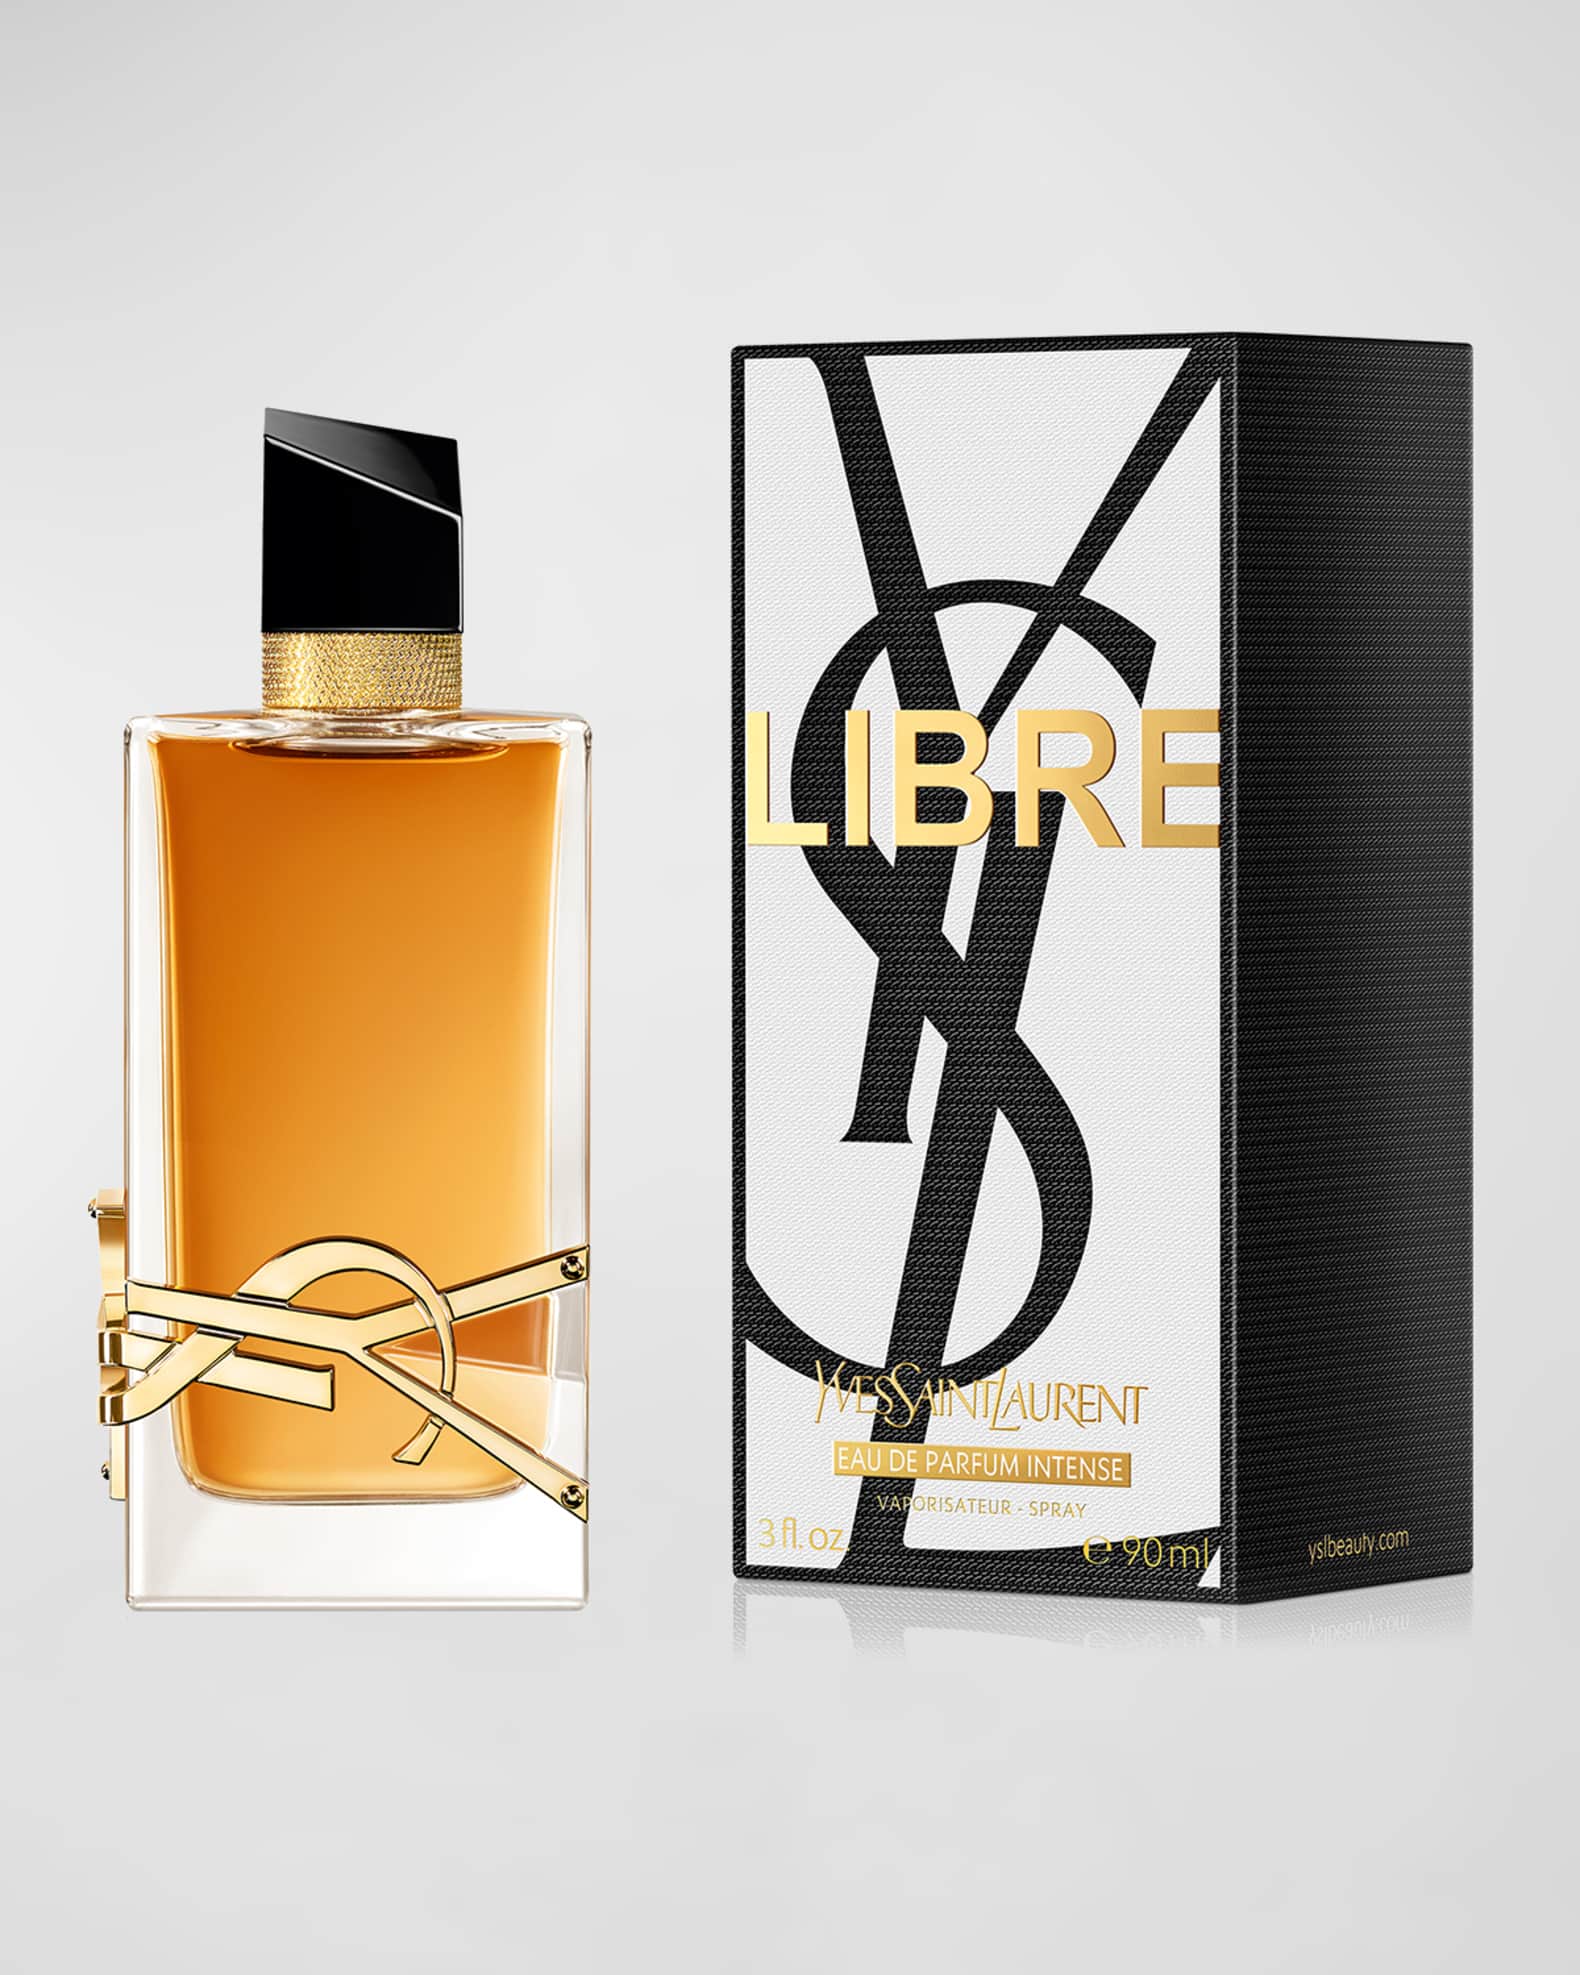 Rive Gauche Perfume Eau De Toilette Intense by Yves Saint Laurent